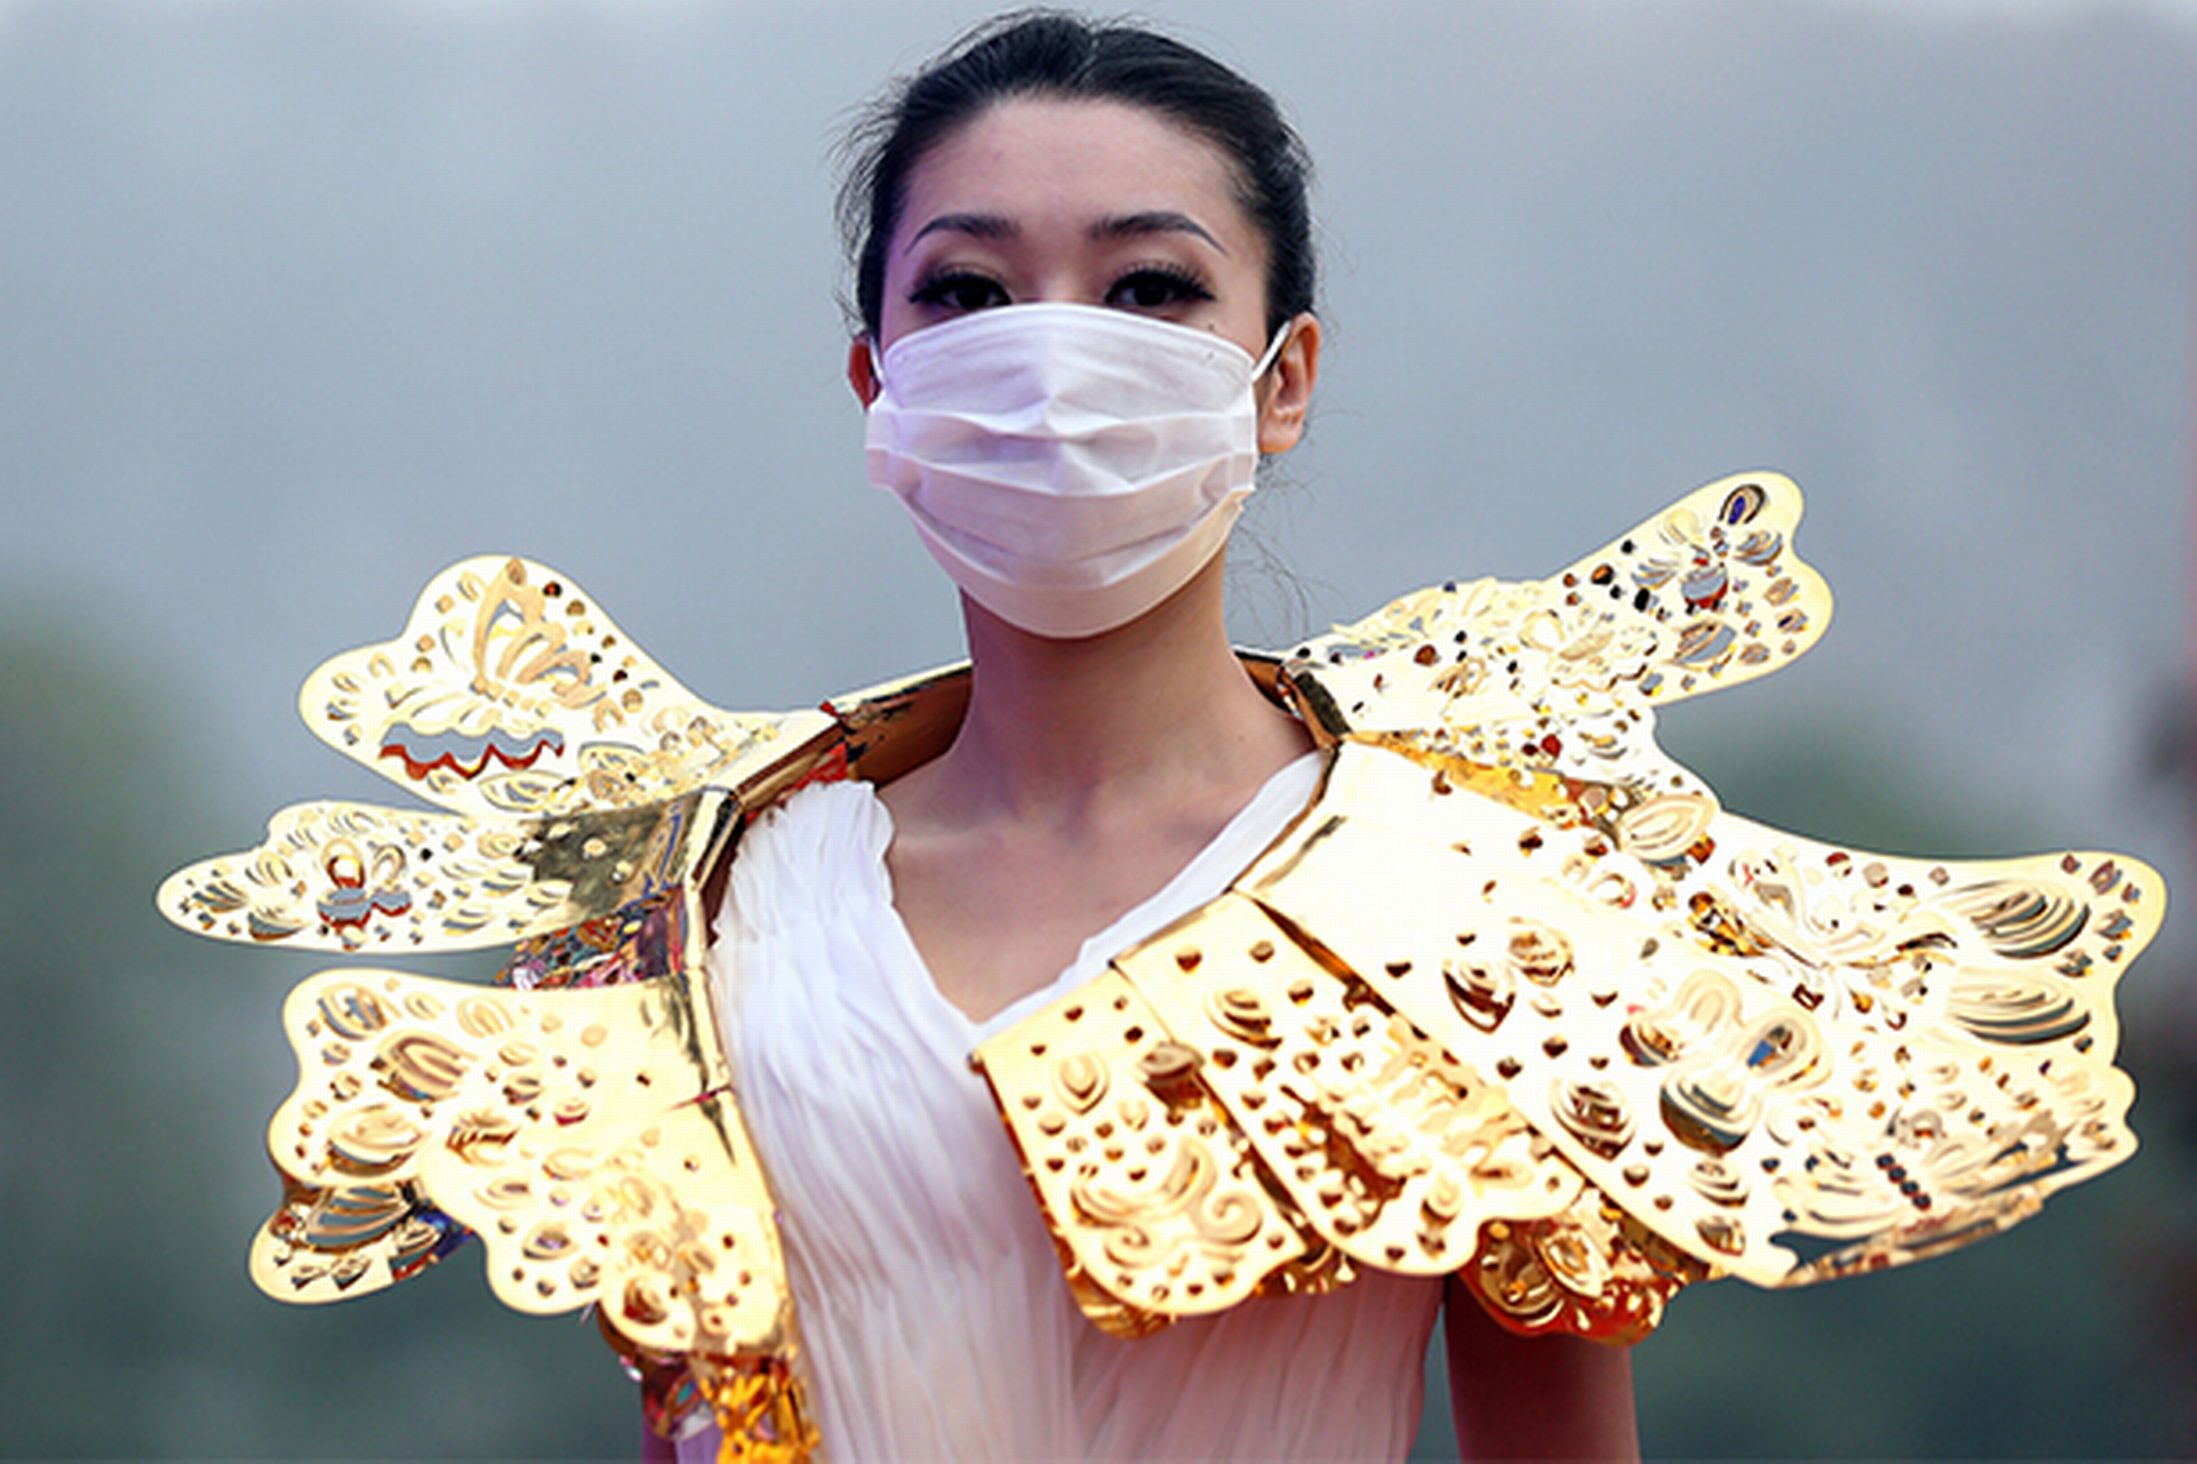 عارضات ازياء صينيات يجبرن على ارتداء الكمامات اثناء العرض خوفا من التلوث!